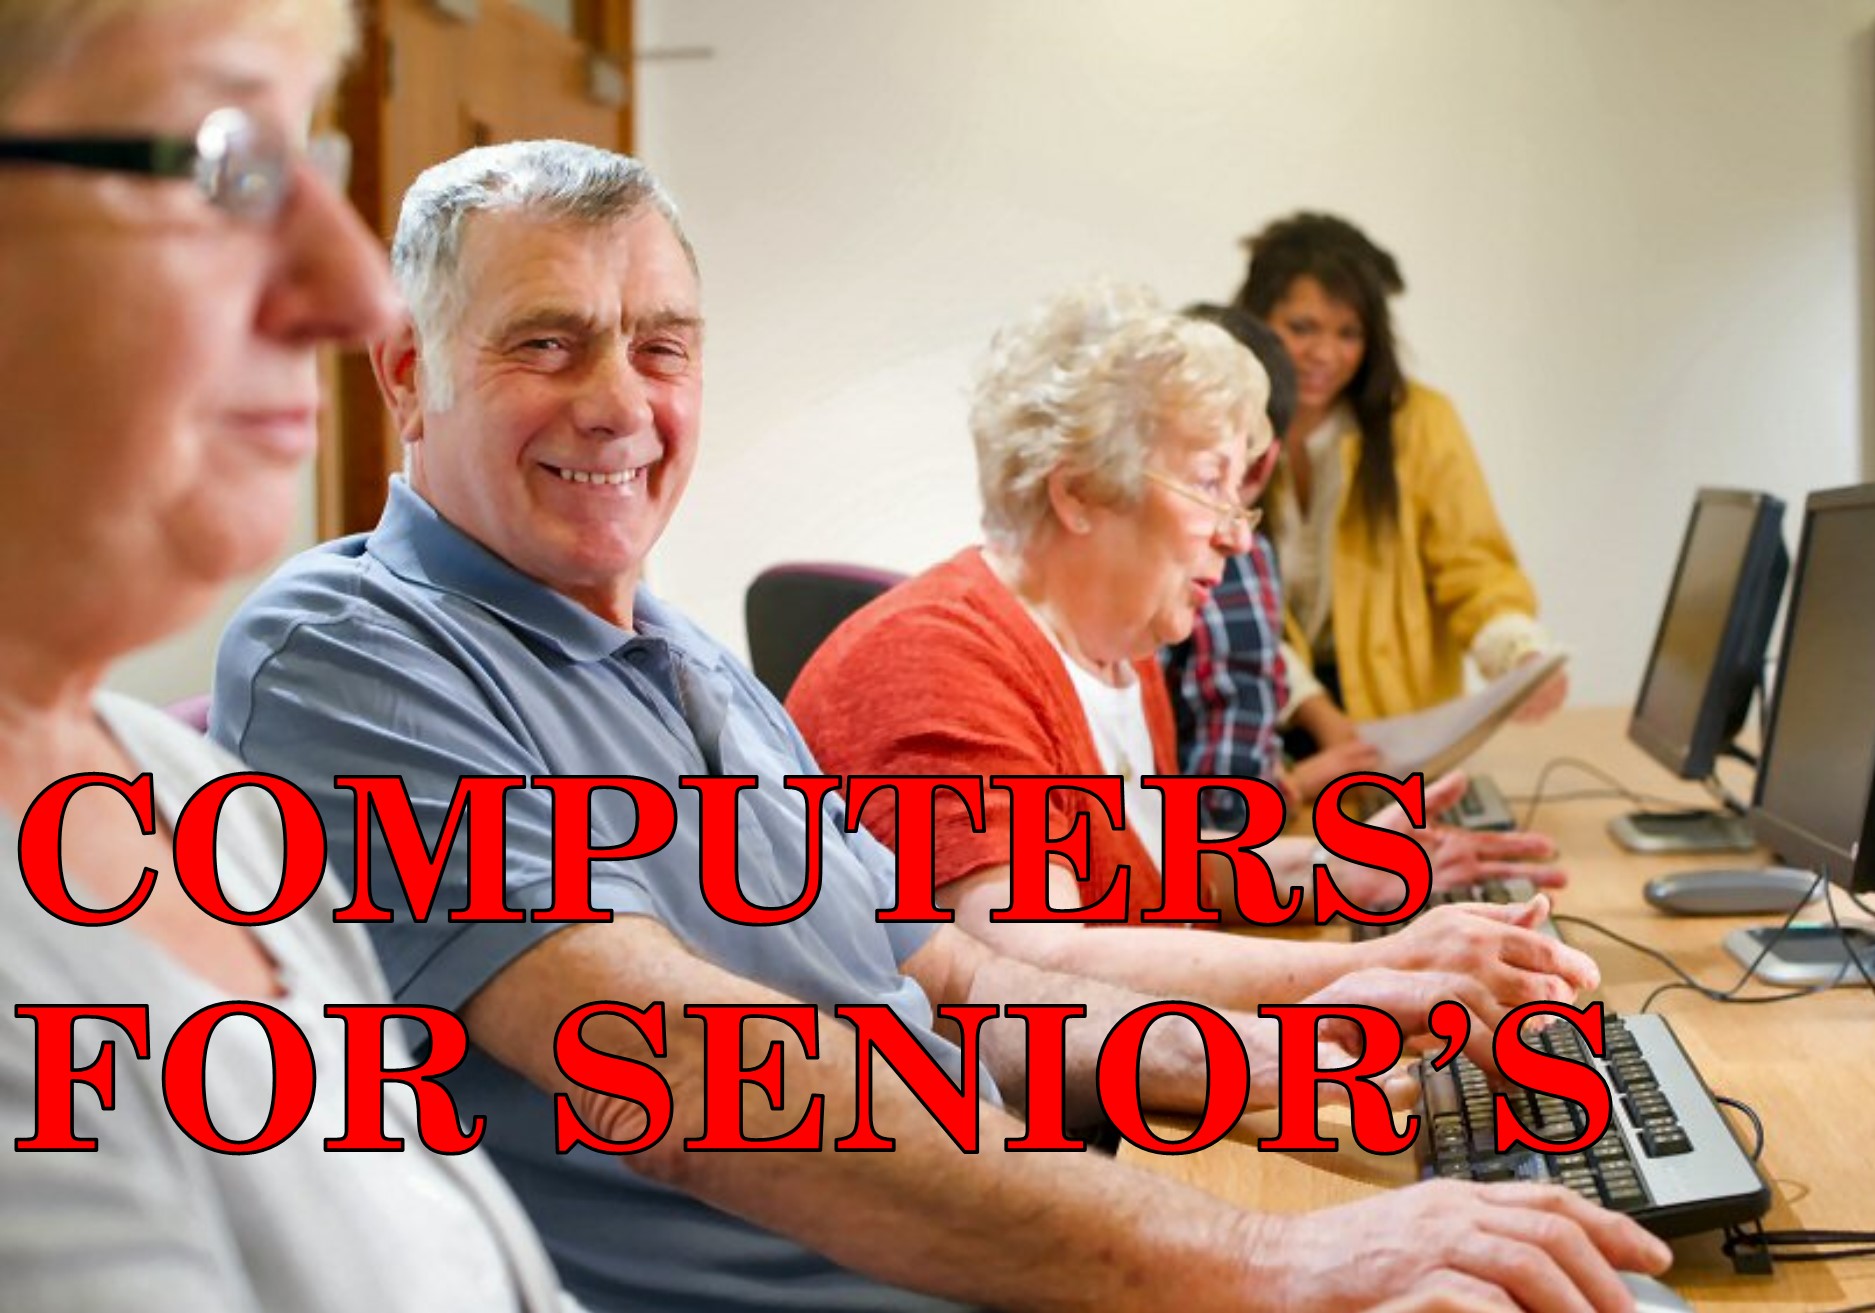 Computer Basics for Seniors